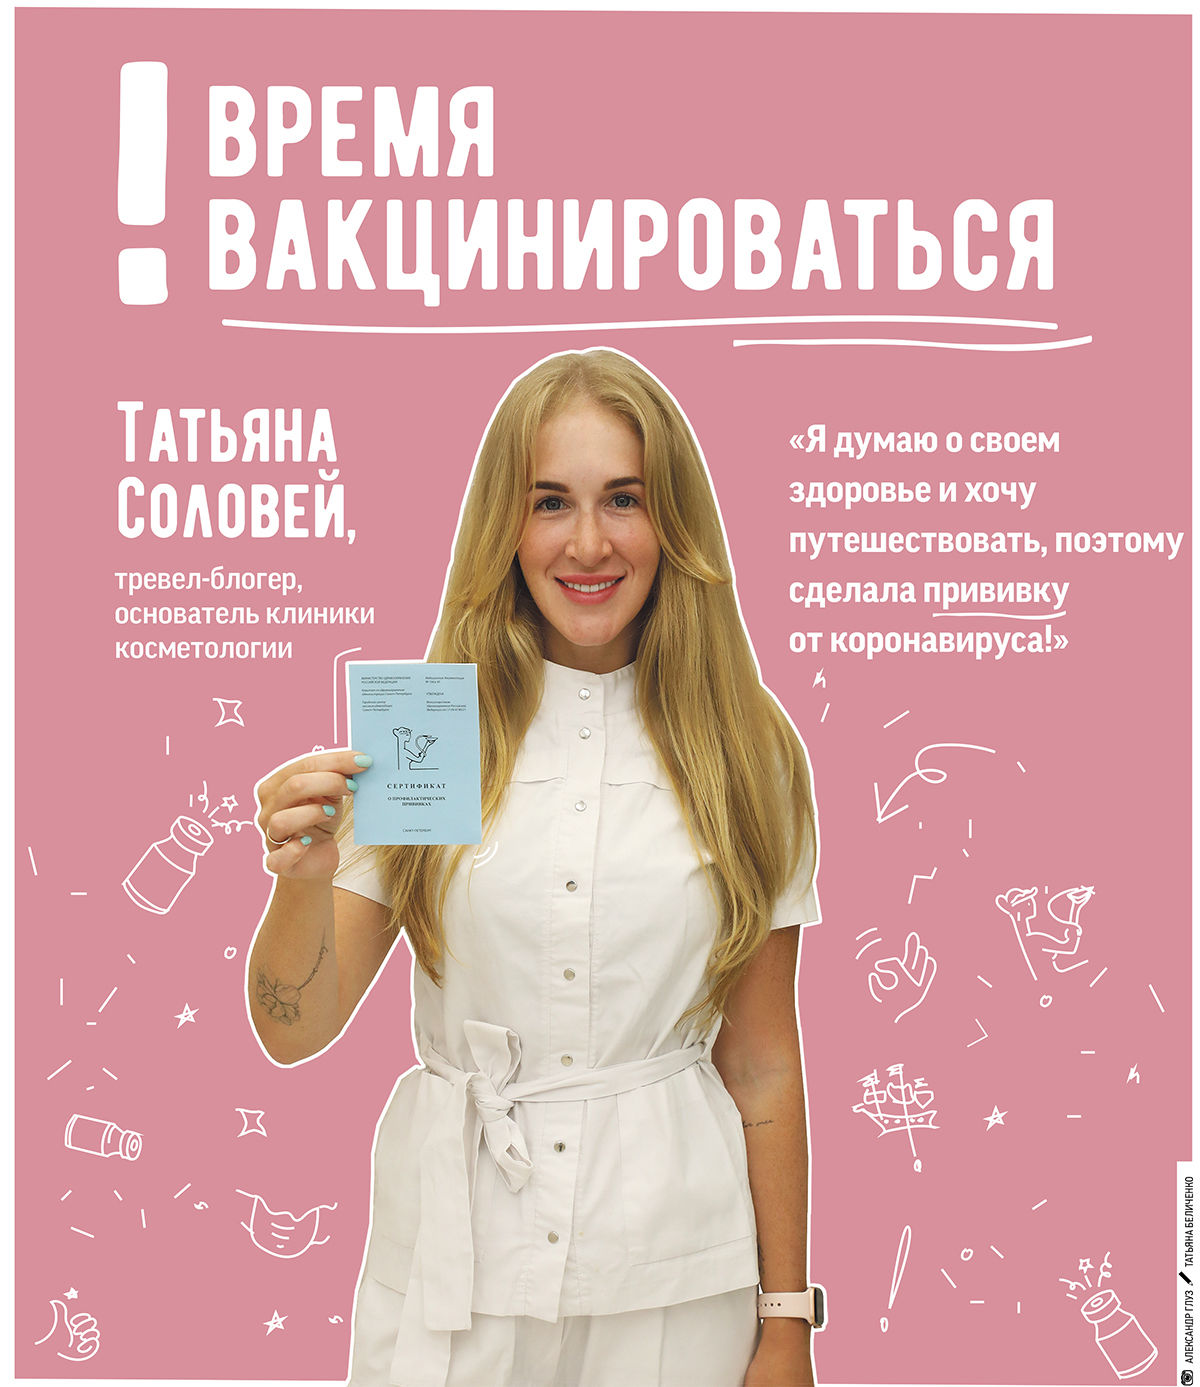 Тревел-блогер Татьяна Соловей признала петербуржцев вакцинироваться